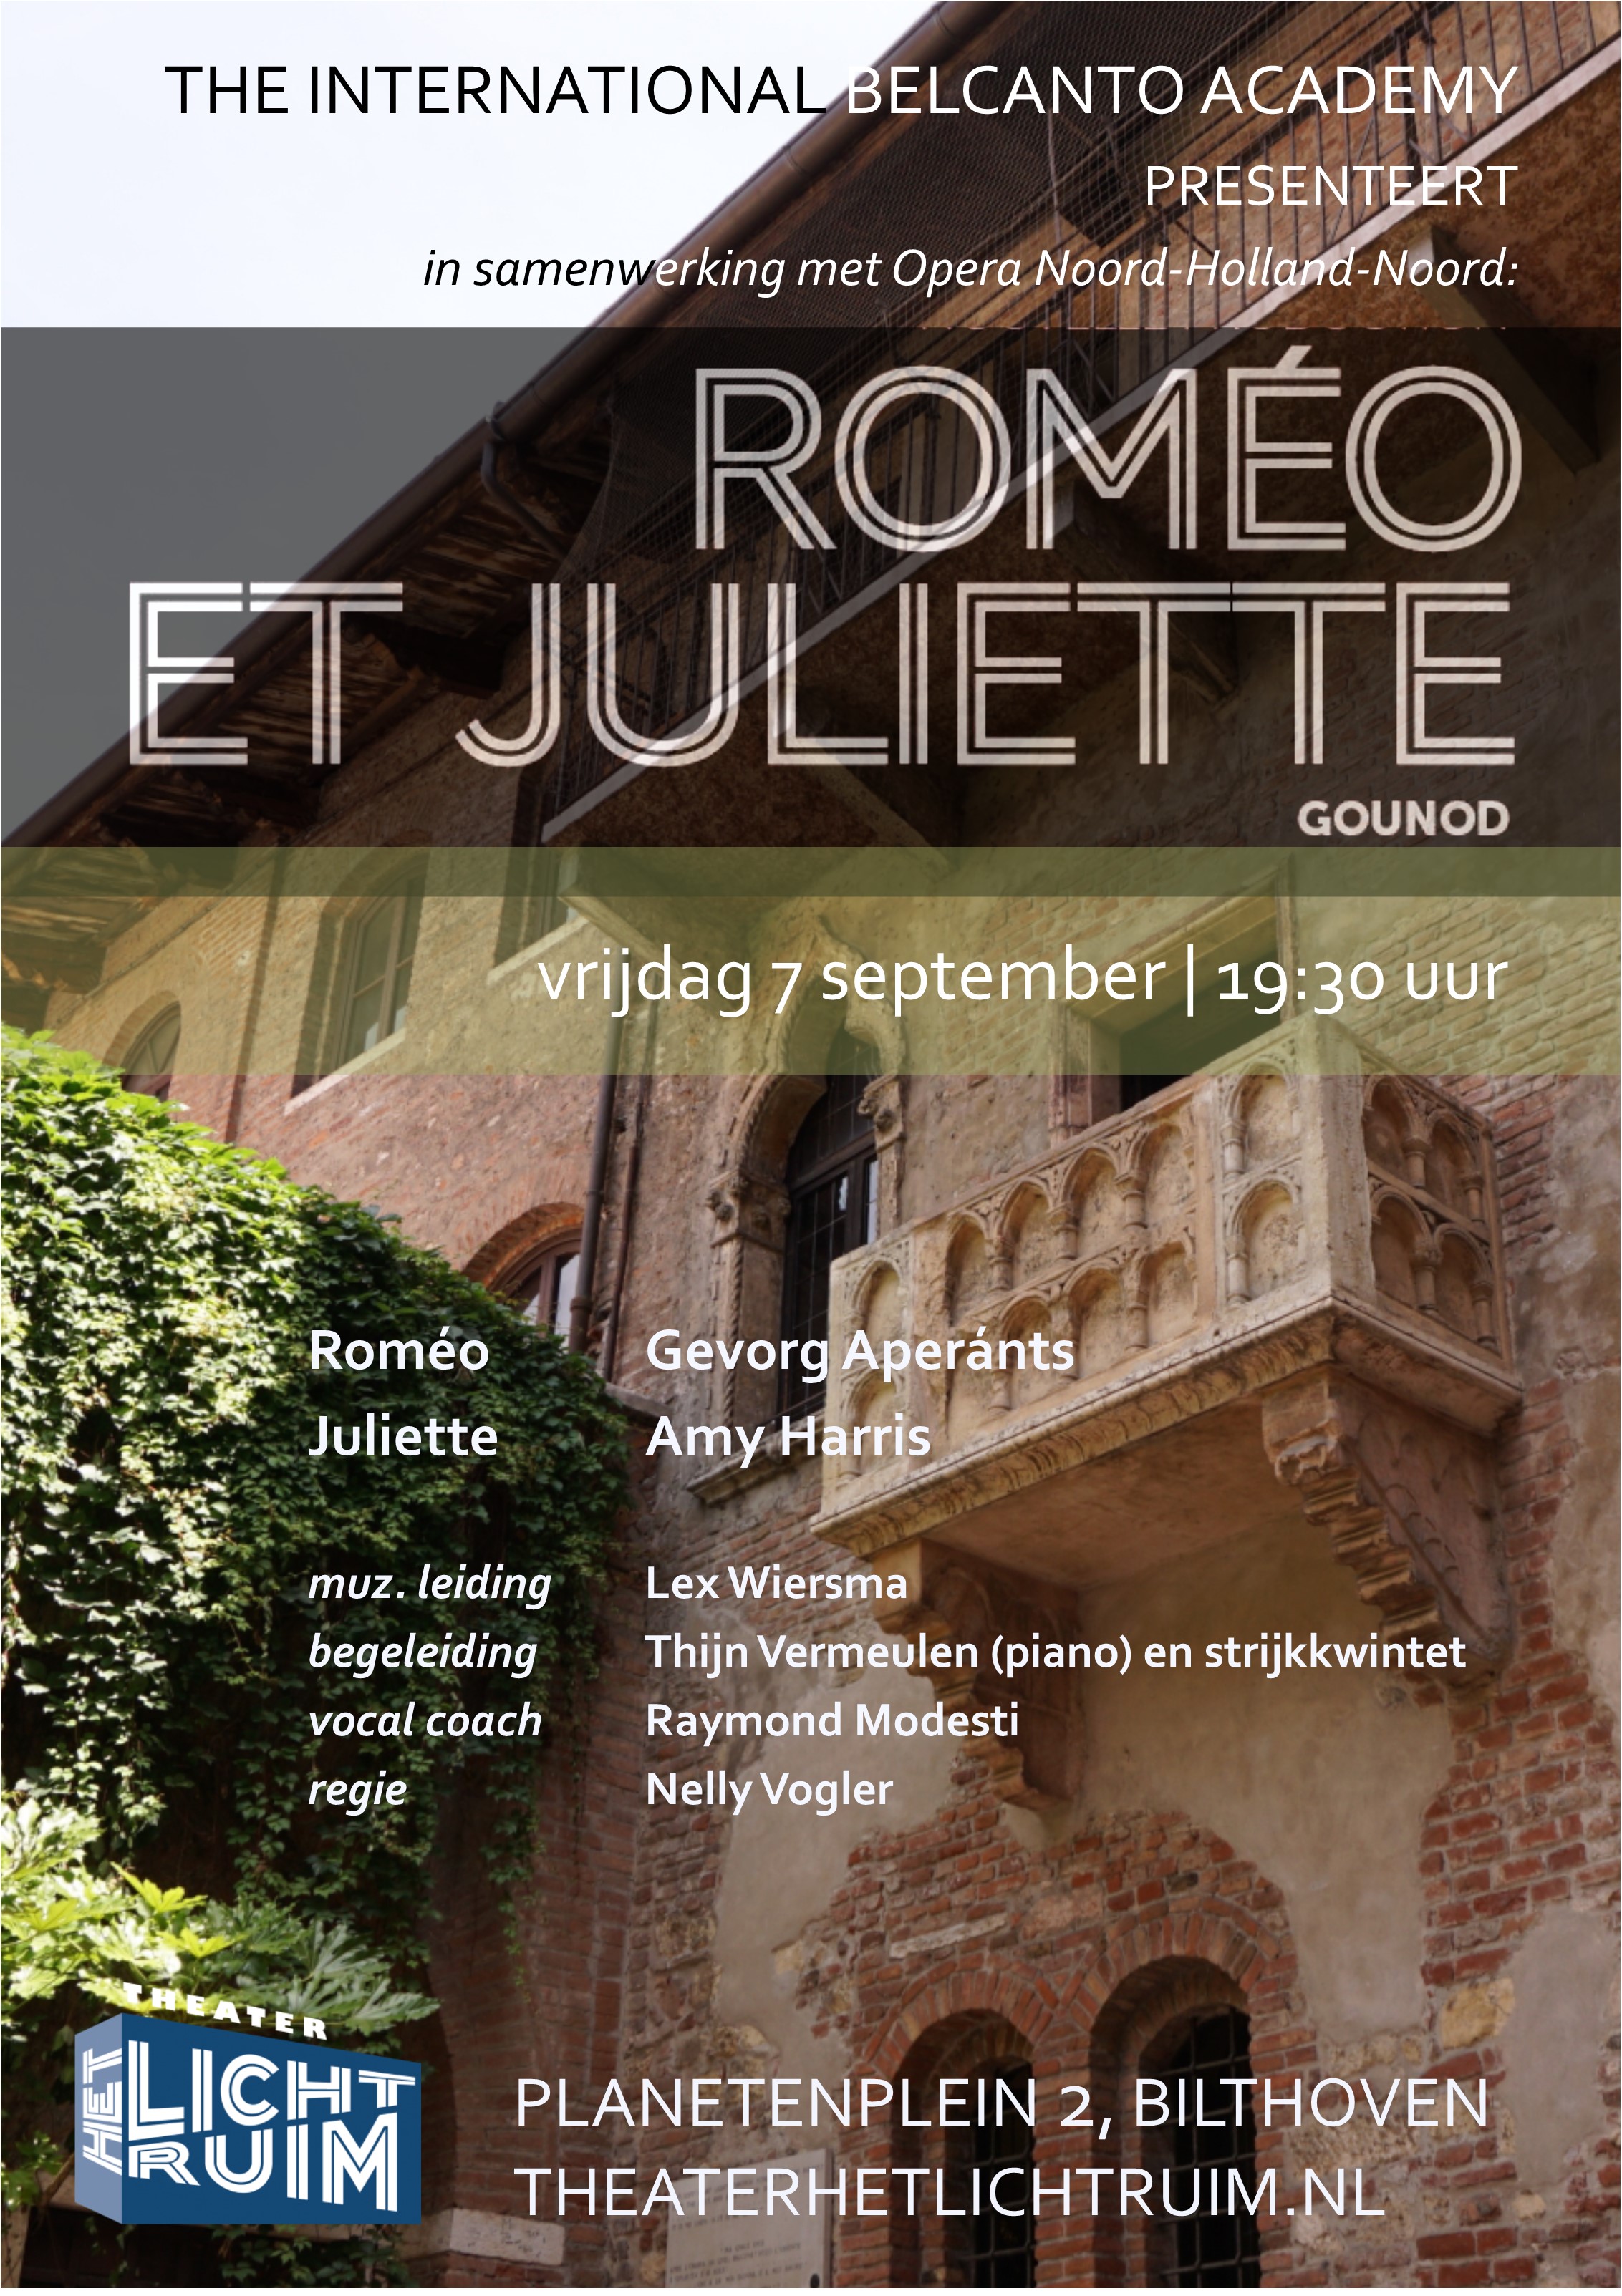 Romeo_et_Juliette_poster_.jpg